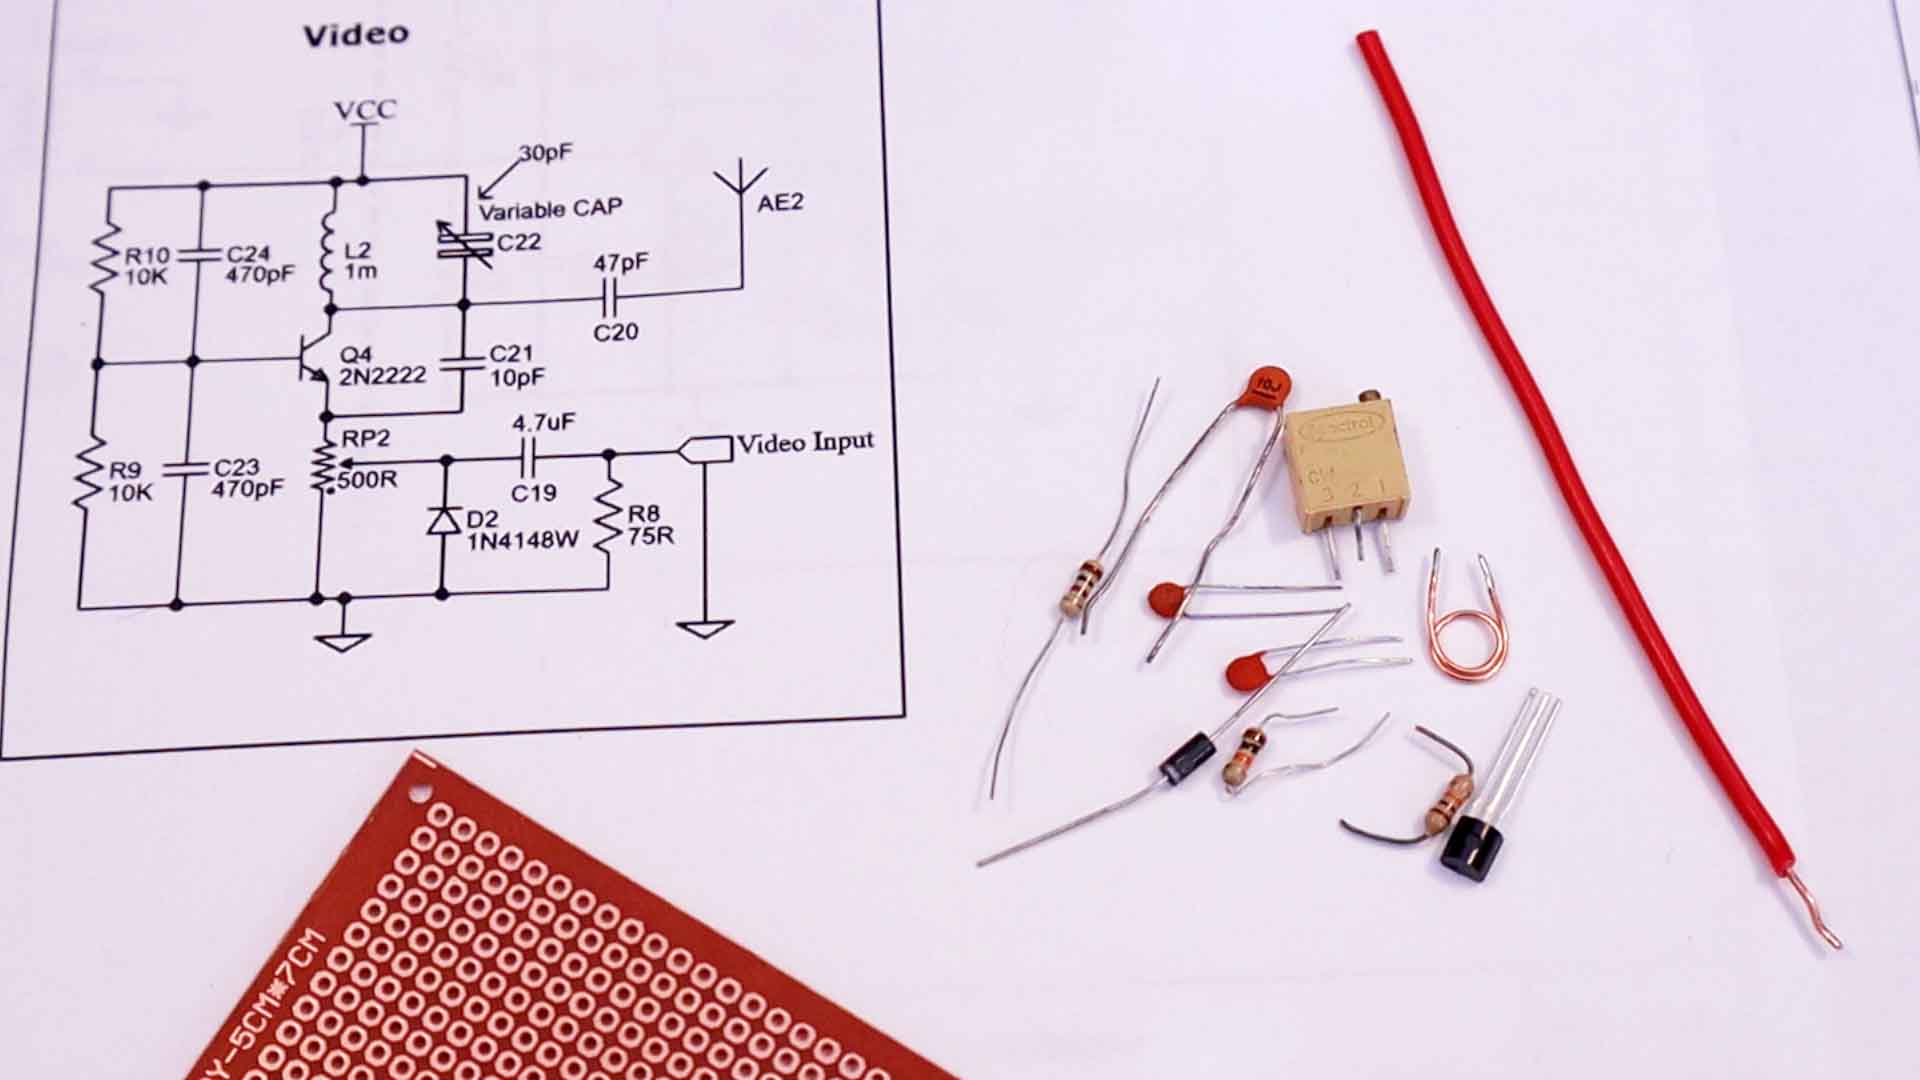 DIY analog video transmitter circuit